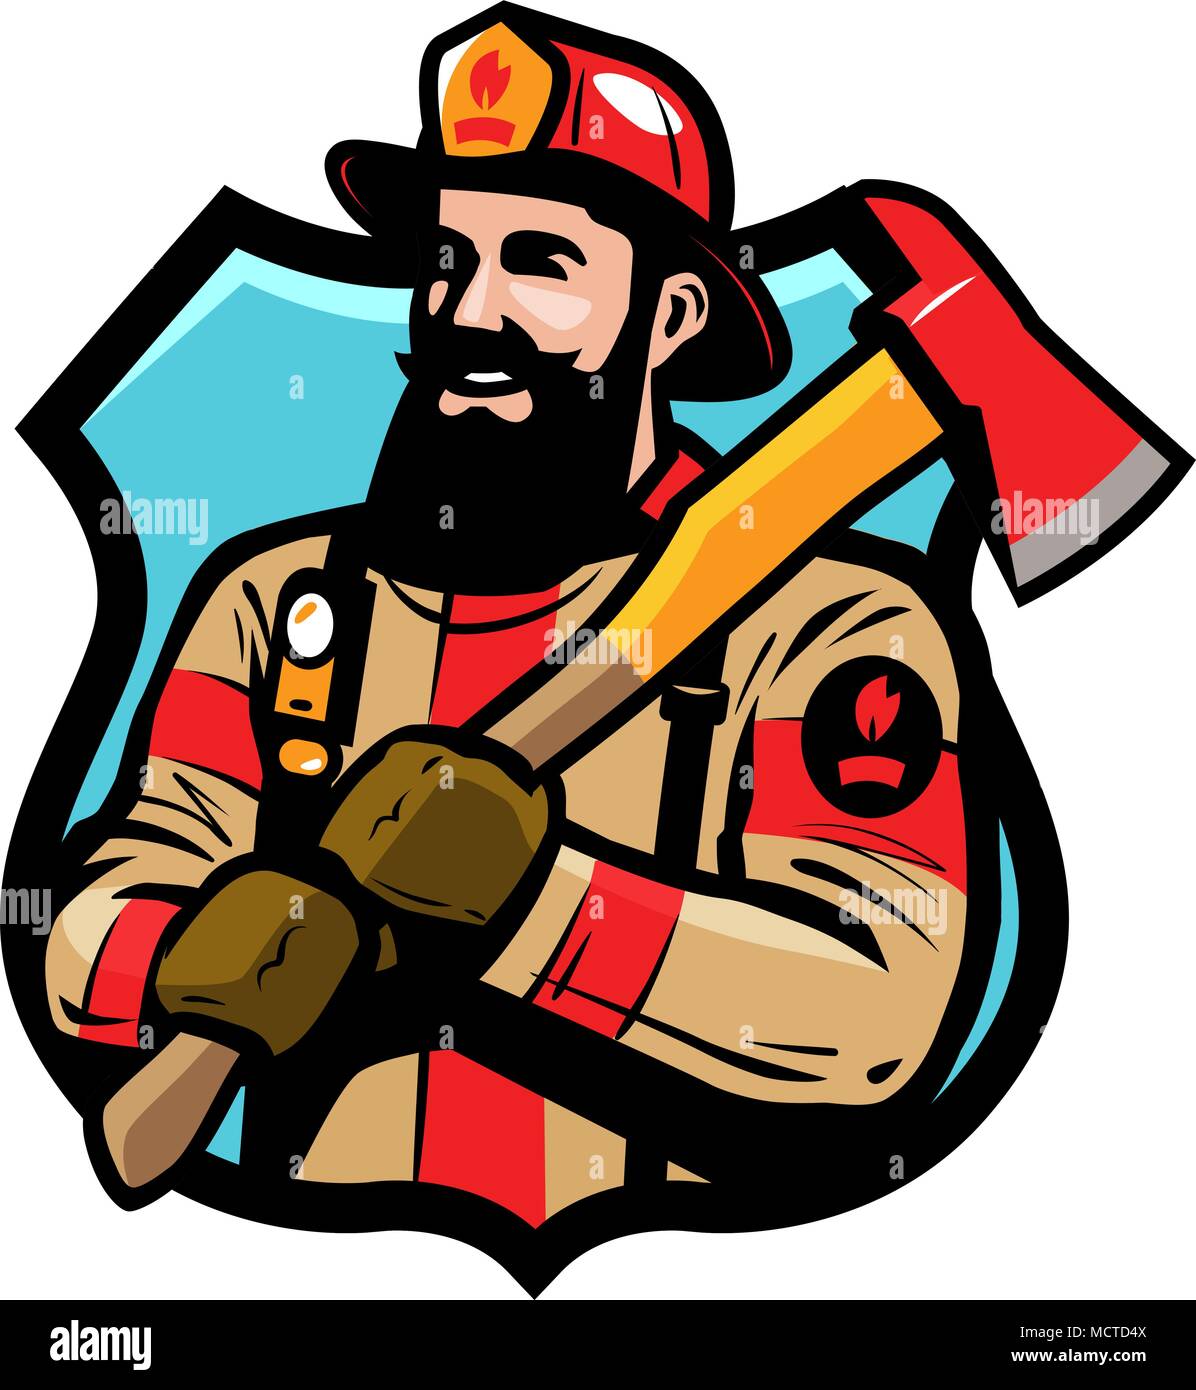 Feuerwehr Logo oder Label. Feuerwehrmann, Feuerwehrmann in Helm hält eine Axt in den Händen. Cartoon Vektor Stock Vektor